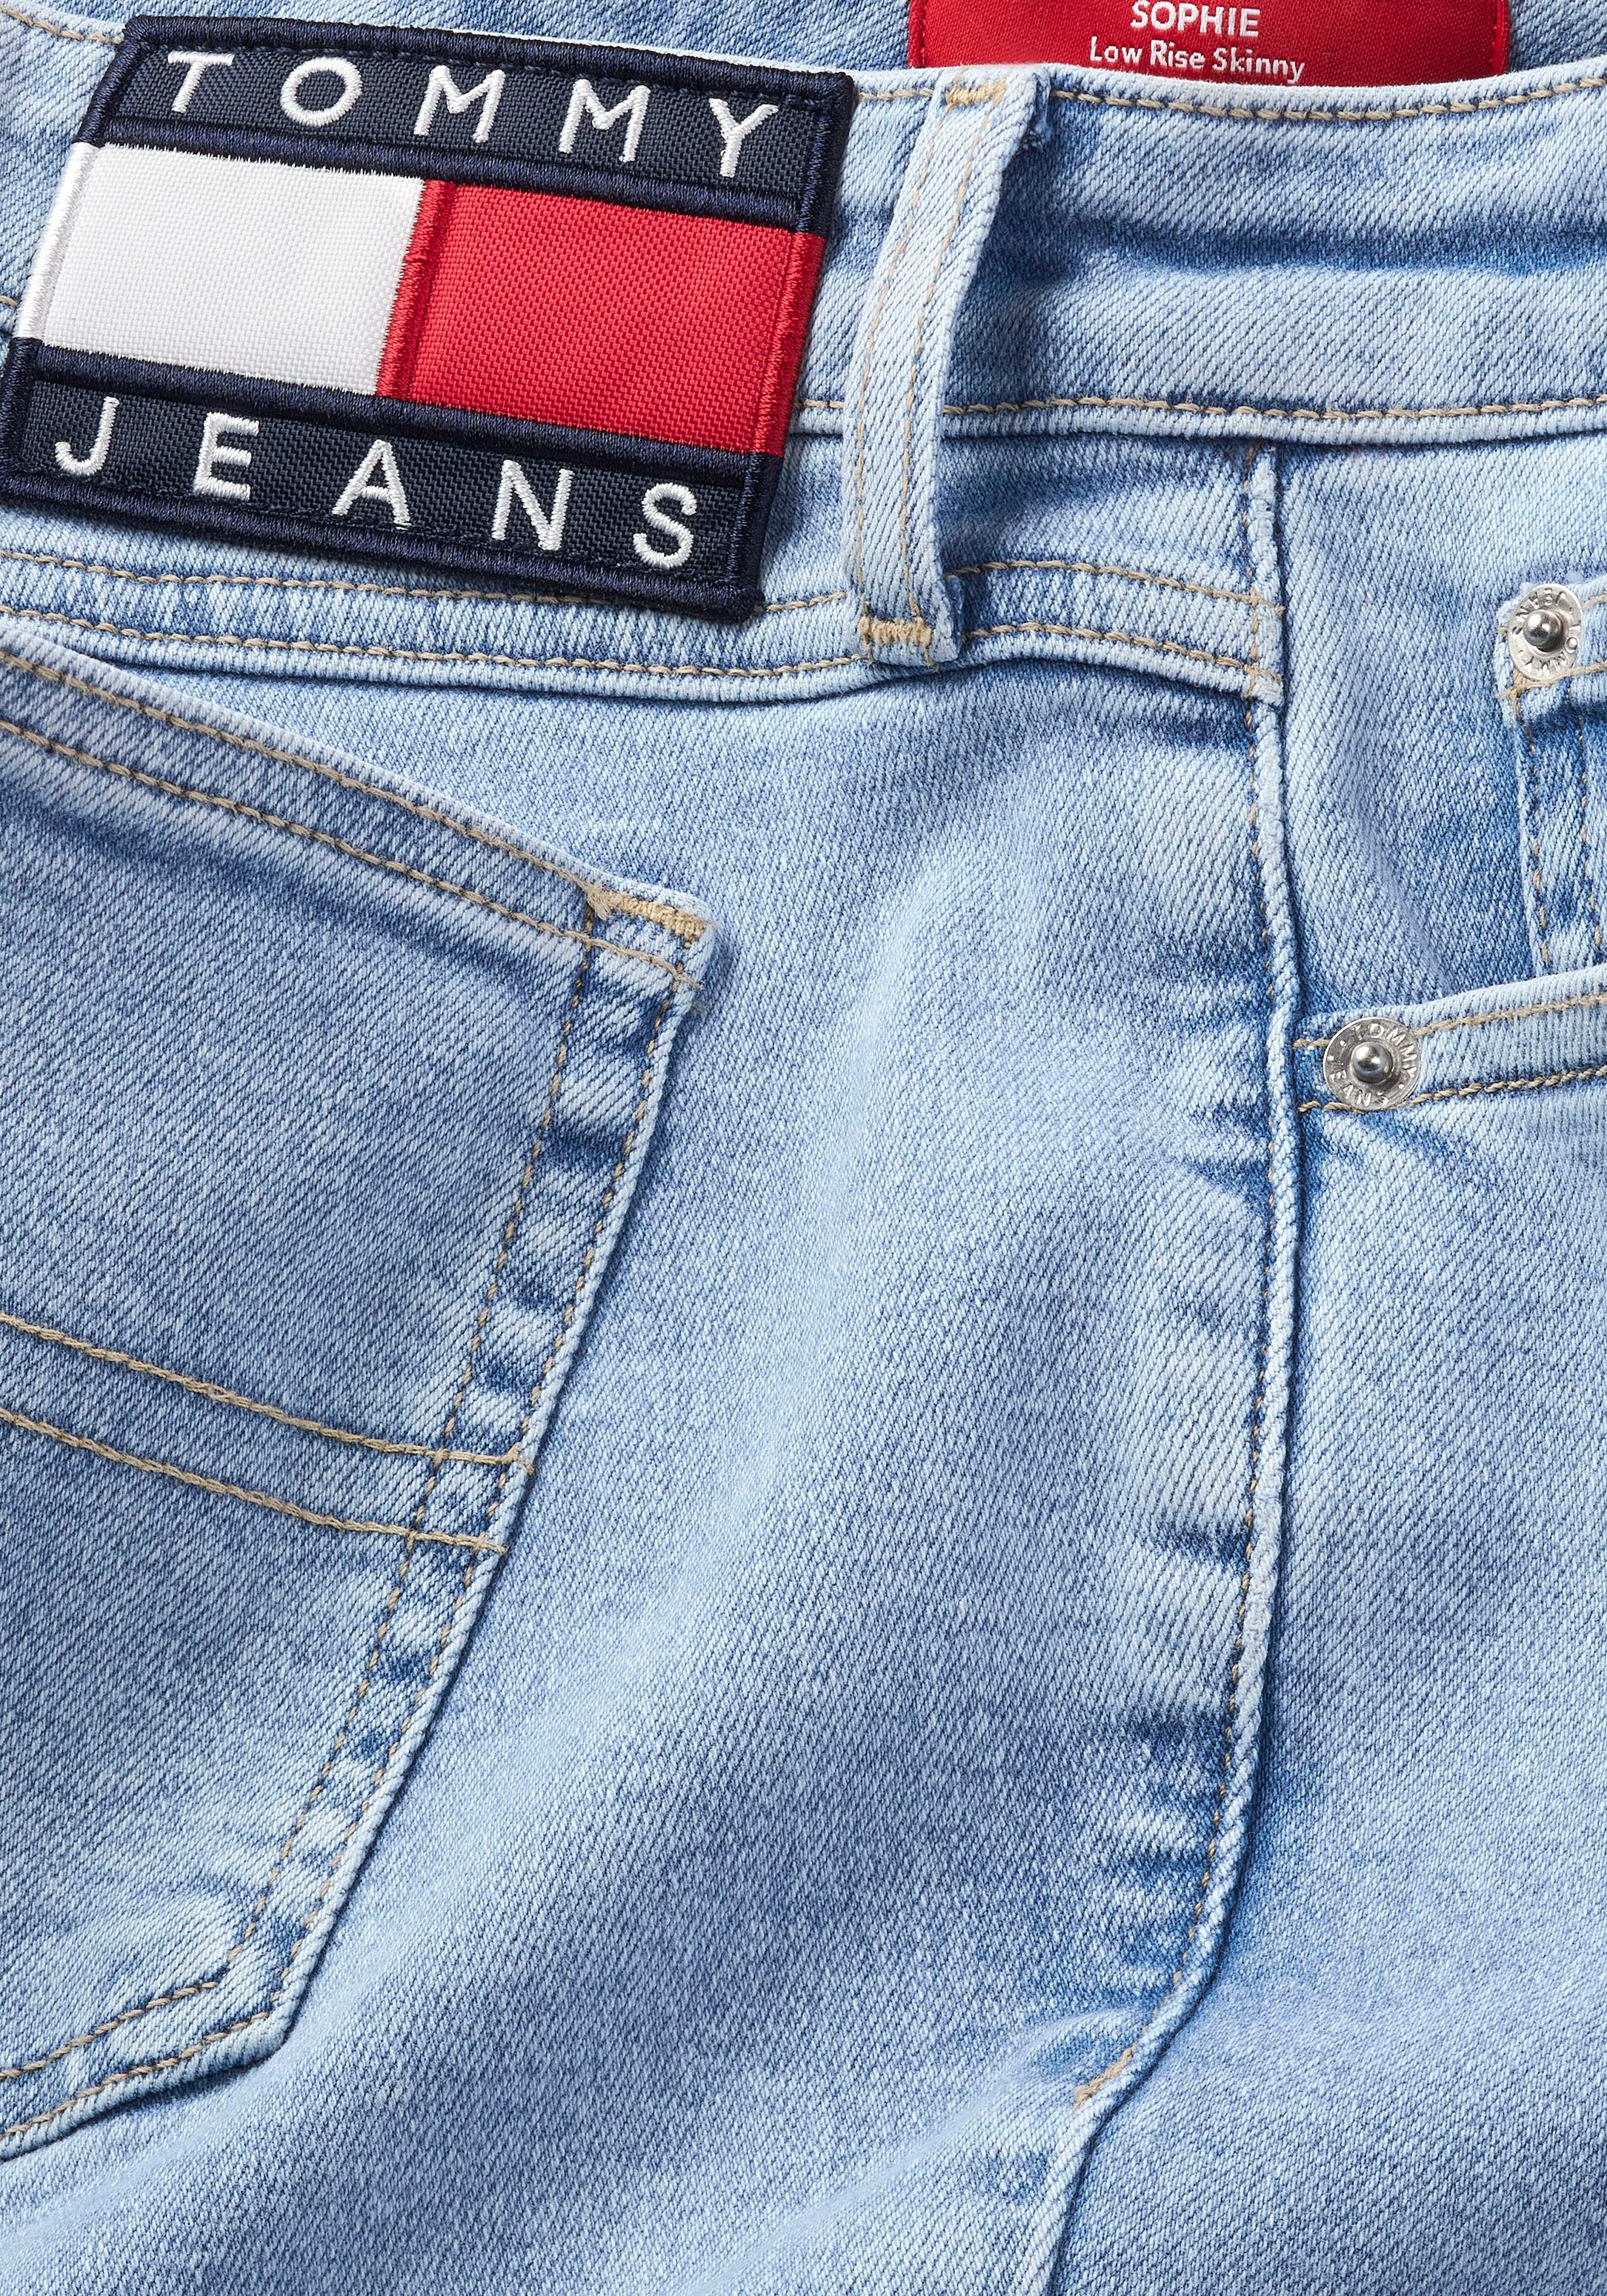 Jeans Labelapplikationen ♕ bei dezenten mit Skinny-fit-Jeans, Tommy